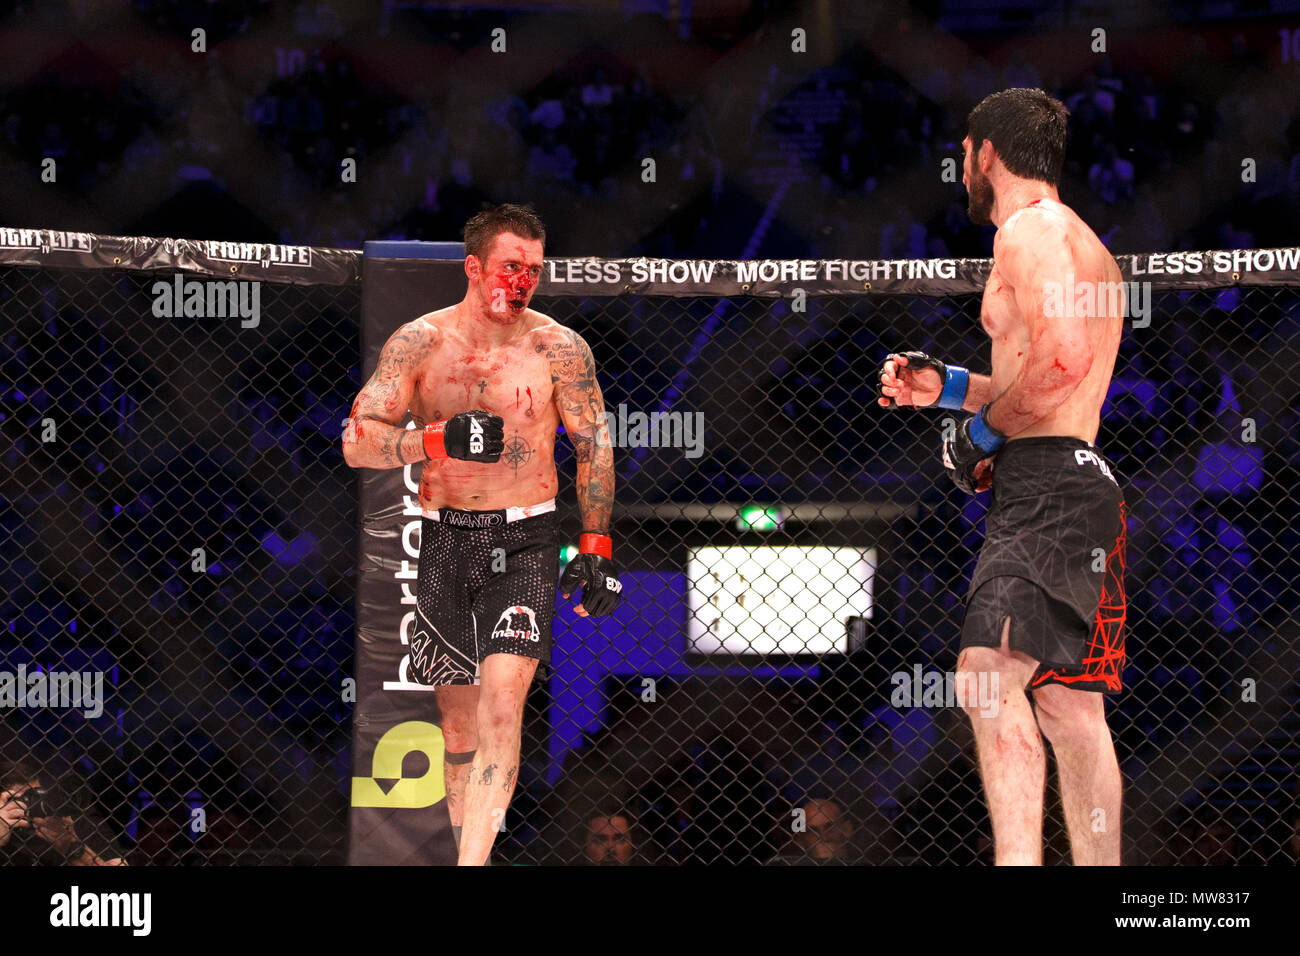 Einem blutigen Adam Zając (links) kämpft Abdul-Rakhman Dzhanaev während der zweiten Runde der mittelgewicht Treffen am ACB 54 in Manchester, UK. Zając würde schließlich aufgrund eines Arztes Stillstand zu verlieren. Absolute Meisterschaft Berkut, Mixed Martial Arts, MMA kämpfen. Stockfoto